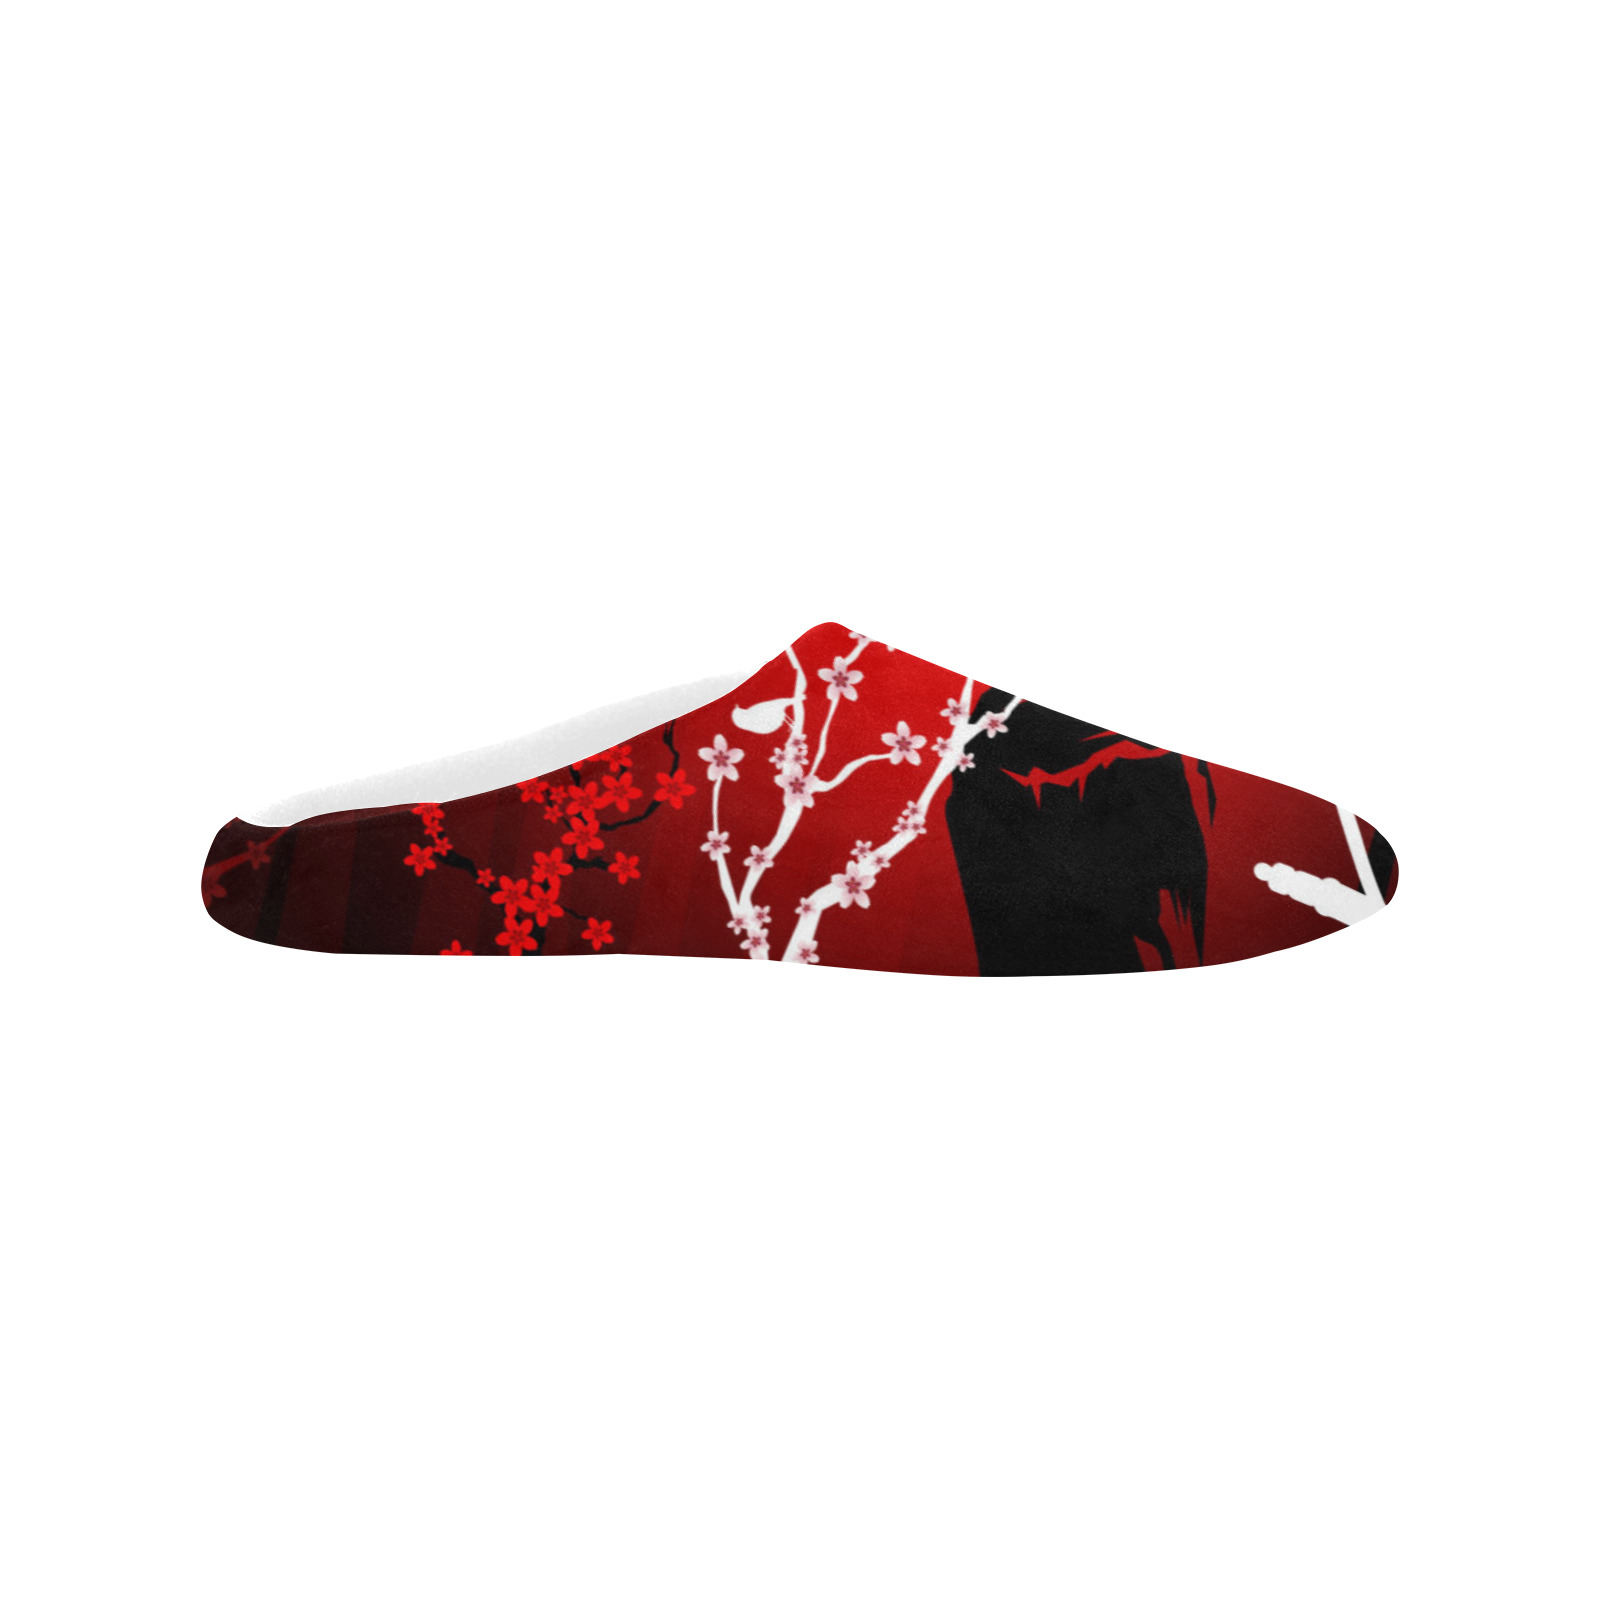 Red Blossom Women's Non-Slip Cotton Slippers (Model 0602)